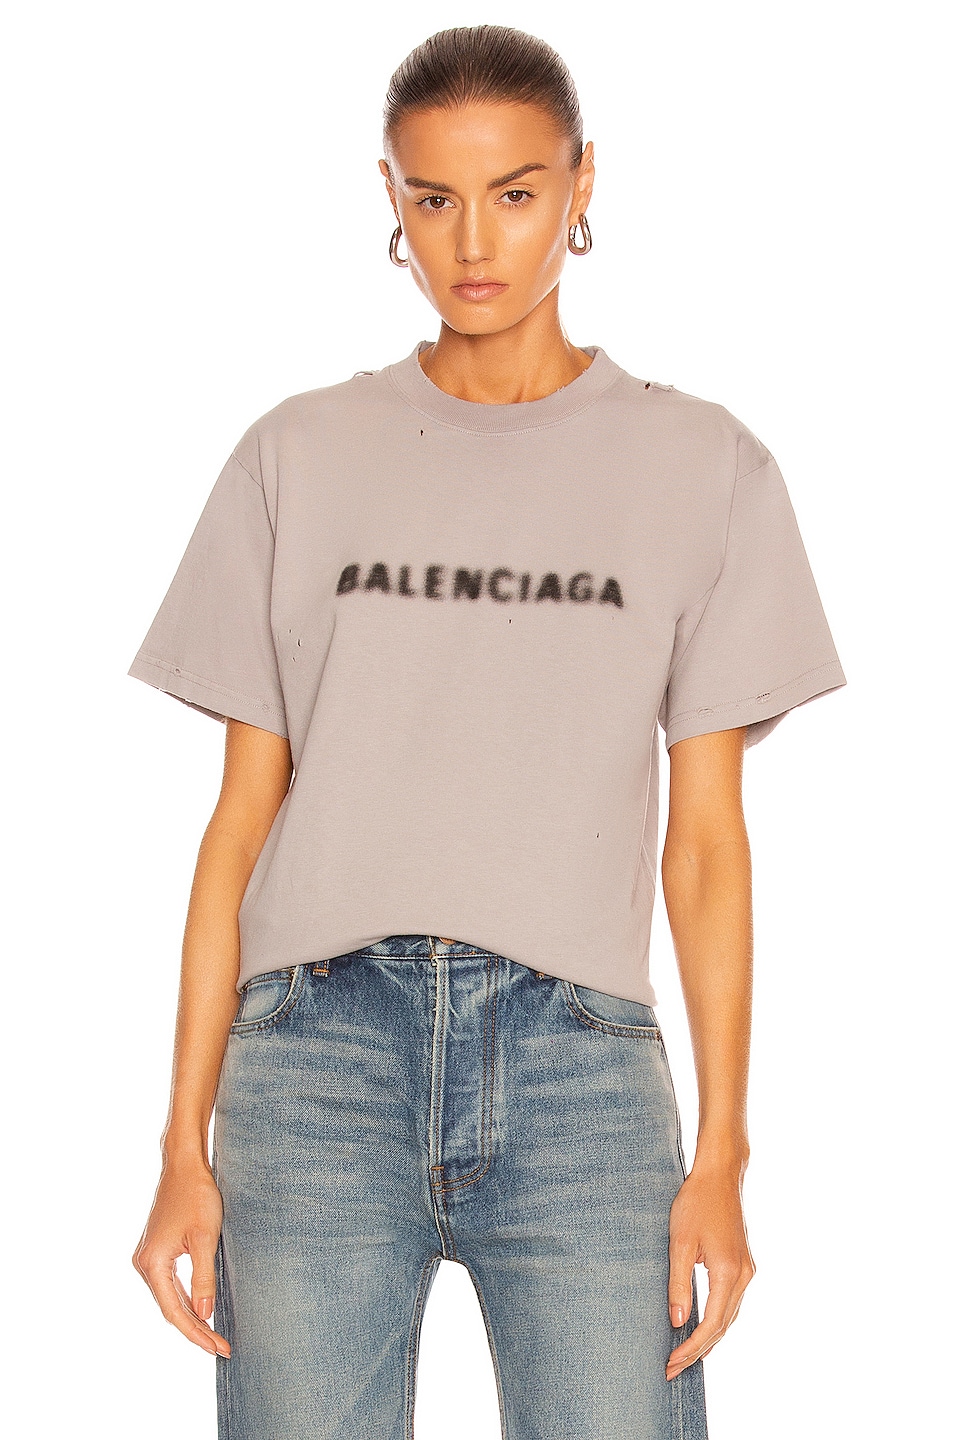 Balenciaga Small Fit T Shirt in Steel Grey & Black | FWRD